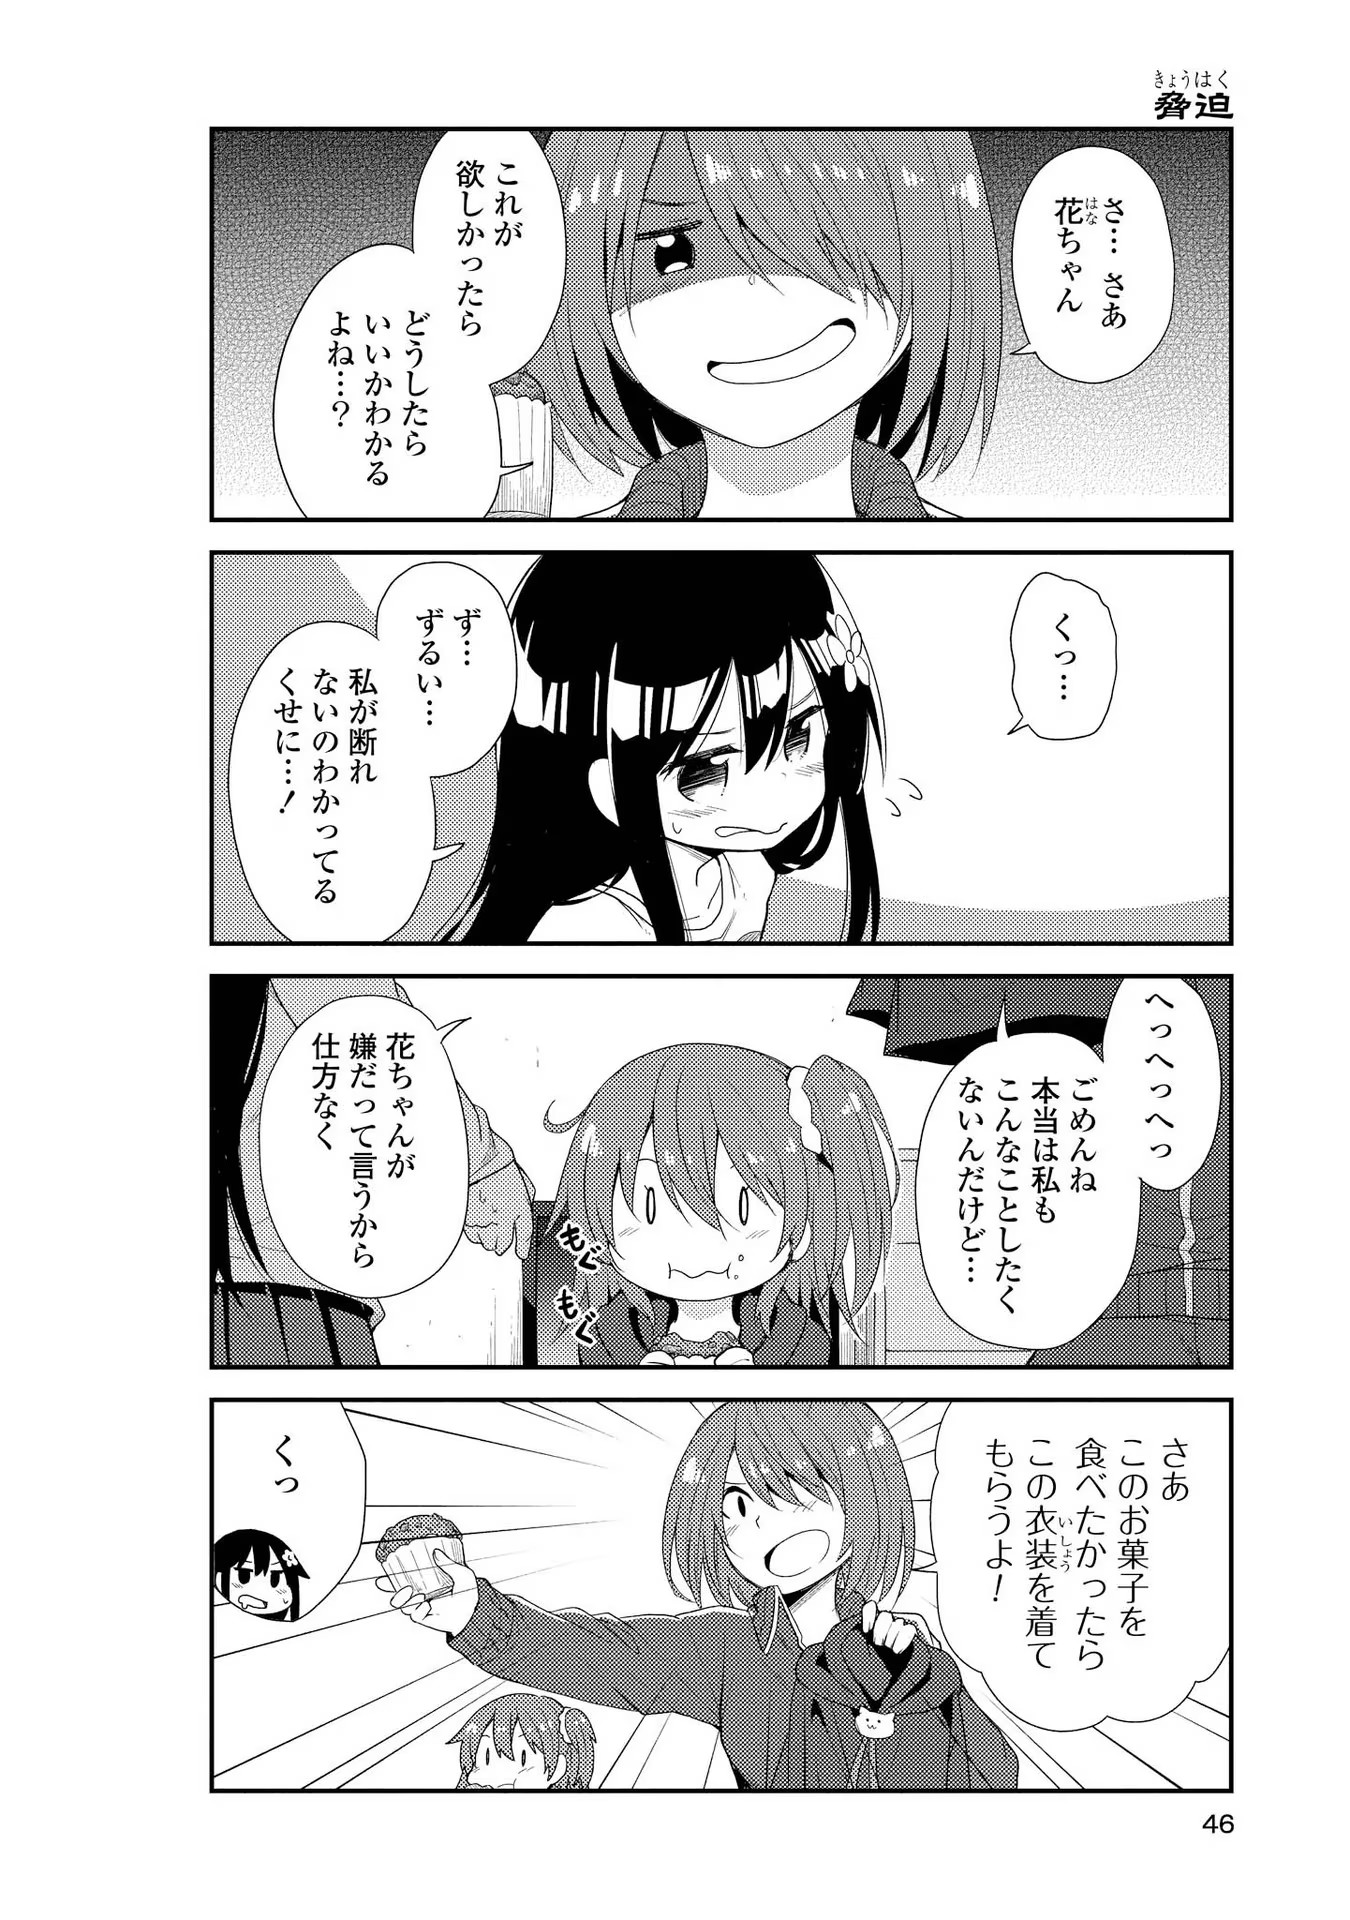 Watashi ni Tenshi ga Maiorita! - Chapter 3 - Page 2